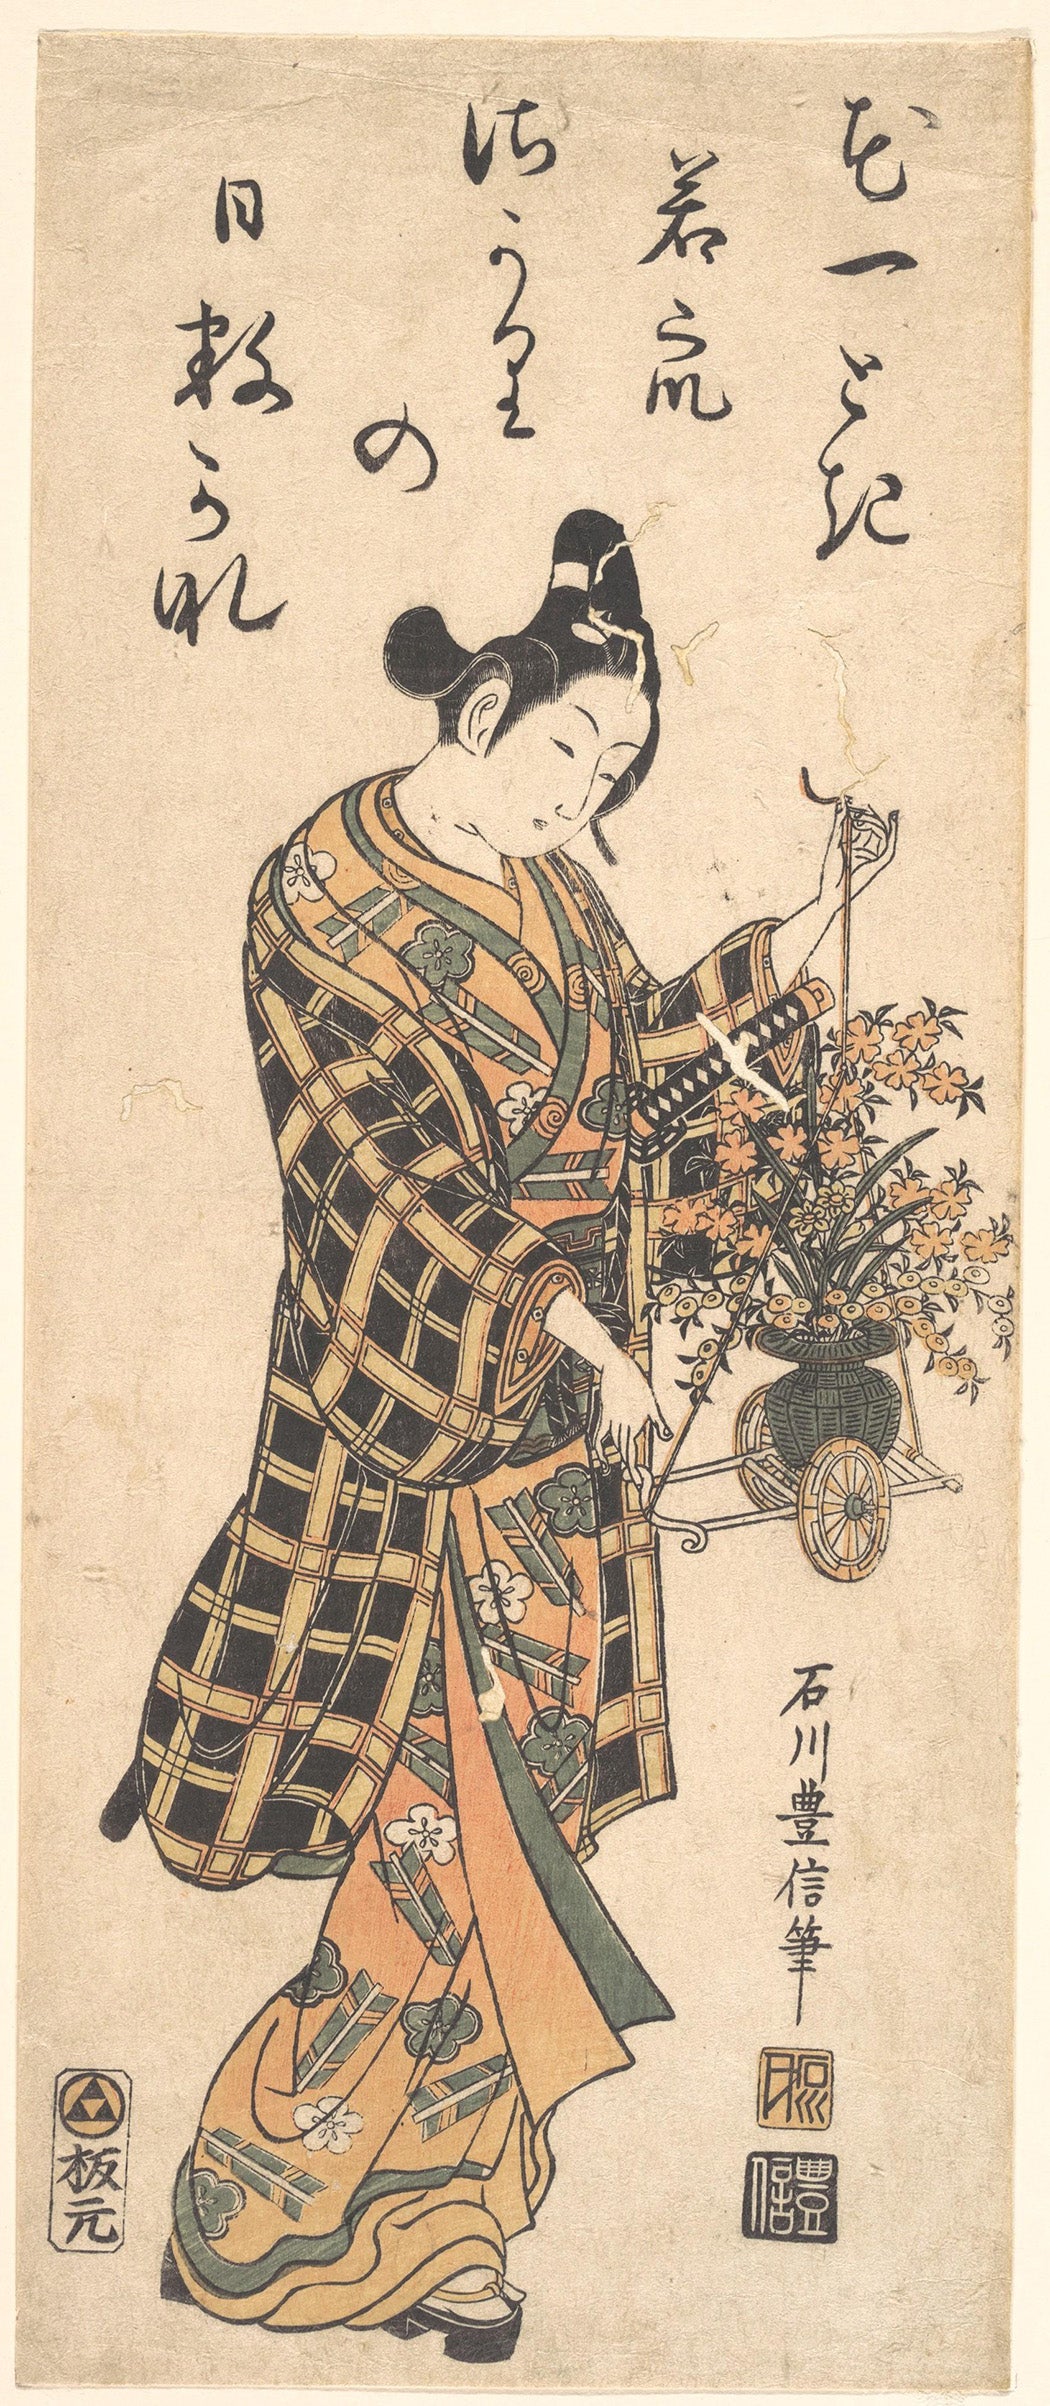 Wakashu with a Miniature Flower Cart by Ishikawa Toyonobu, c. 1750-60s